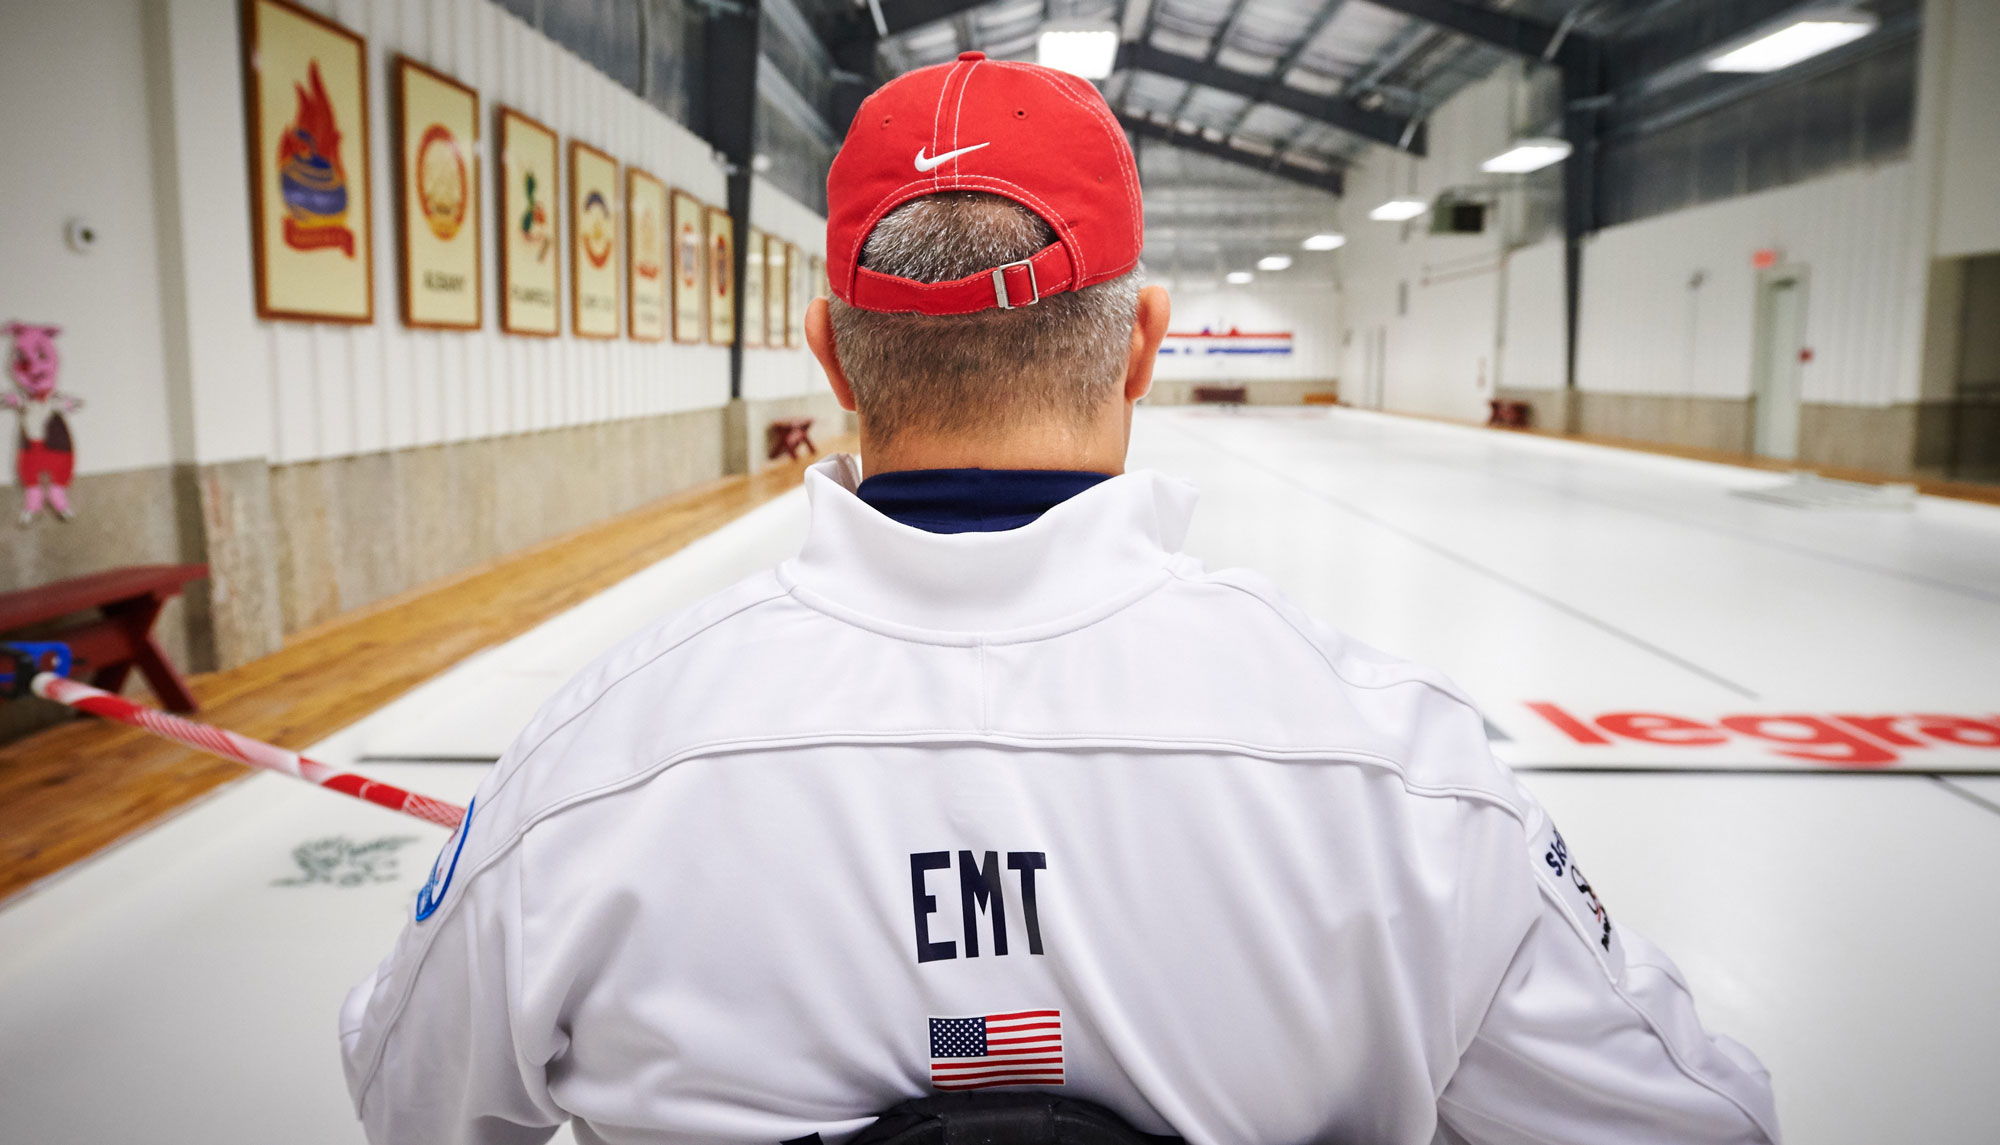 Steve Emt curling